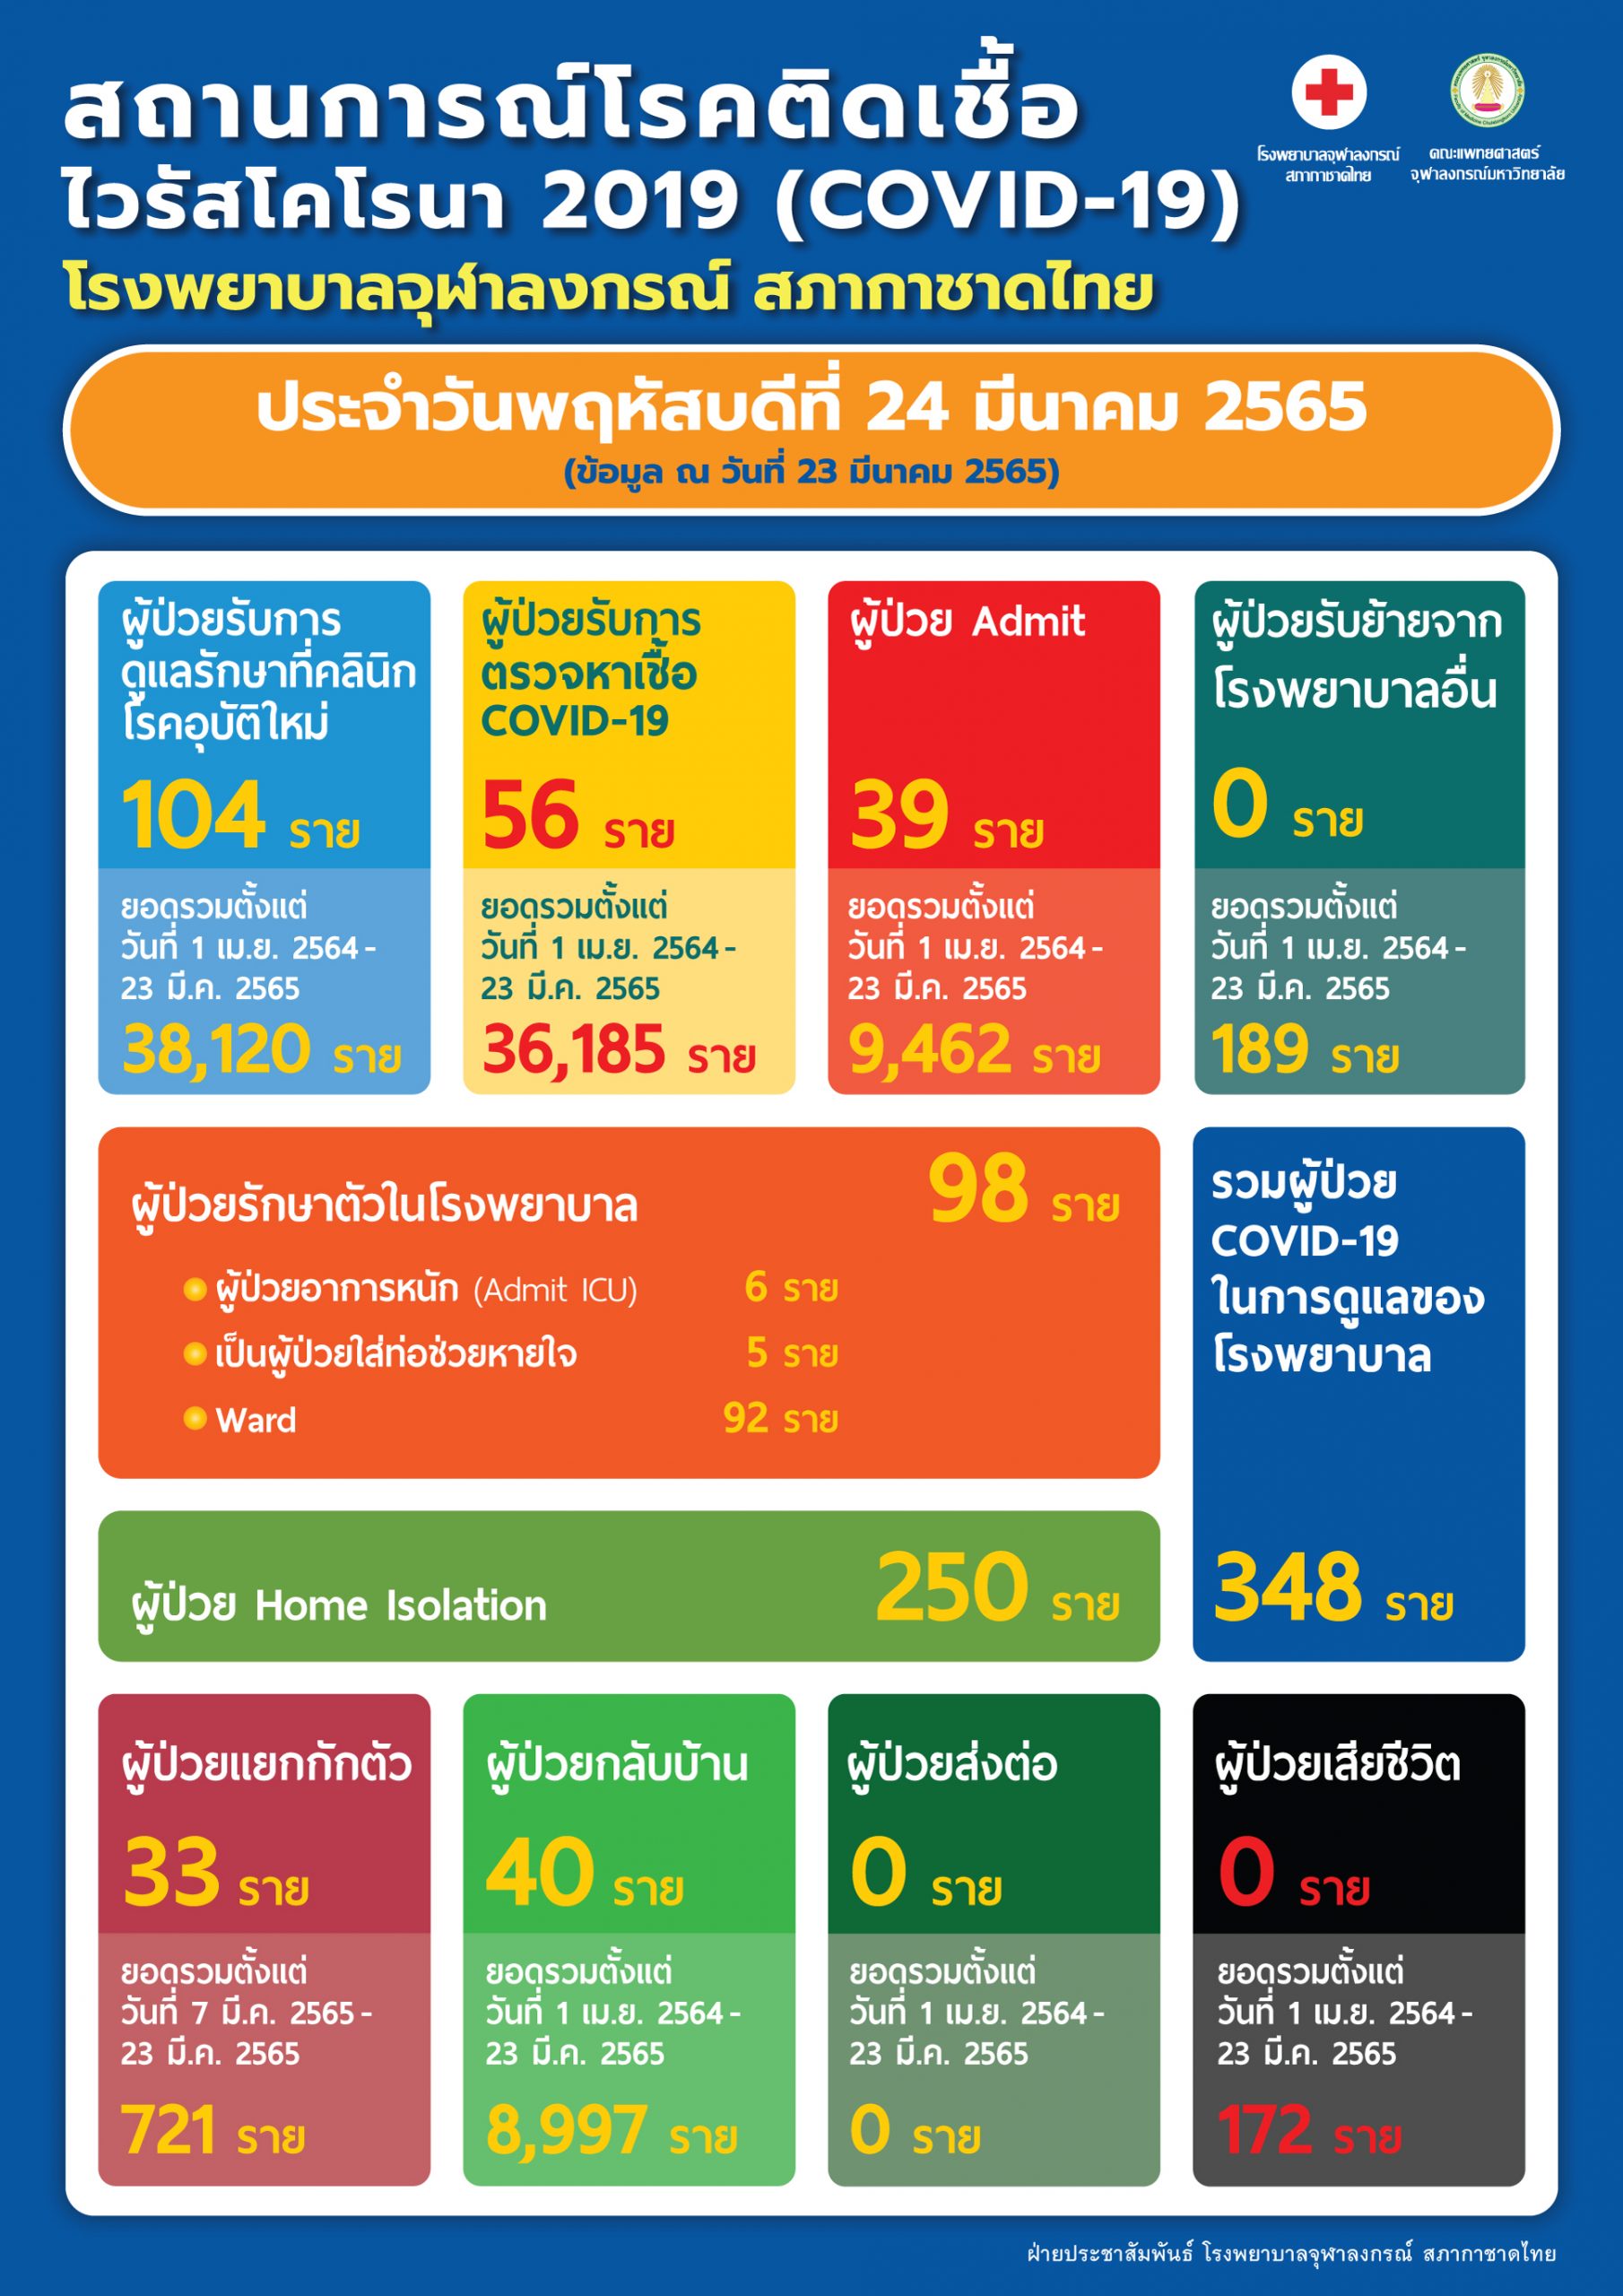 สถานการณ์โรคติดเชื้อไวรัสโคโรนา 2019 (COVID-19) โรงพยาบาลจุฬาลงกรณ์ สภากาชาดไทย ประจำวันพฤหัสบดีที่ 24 มีนาคม 2565